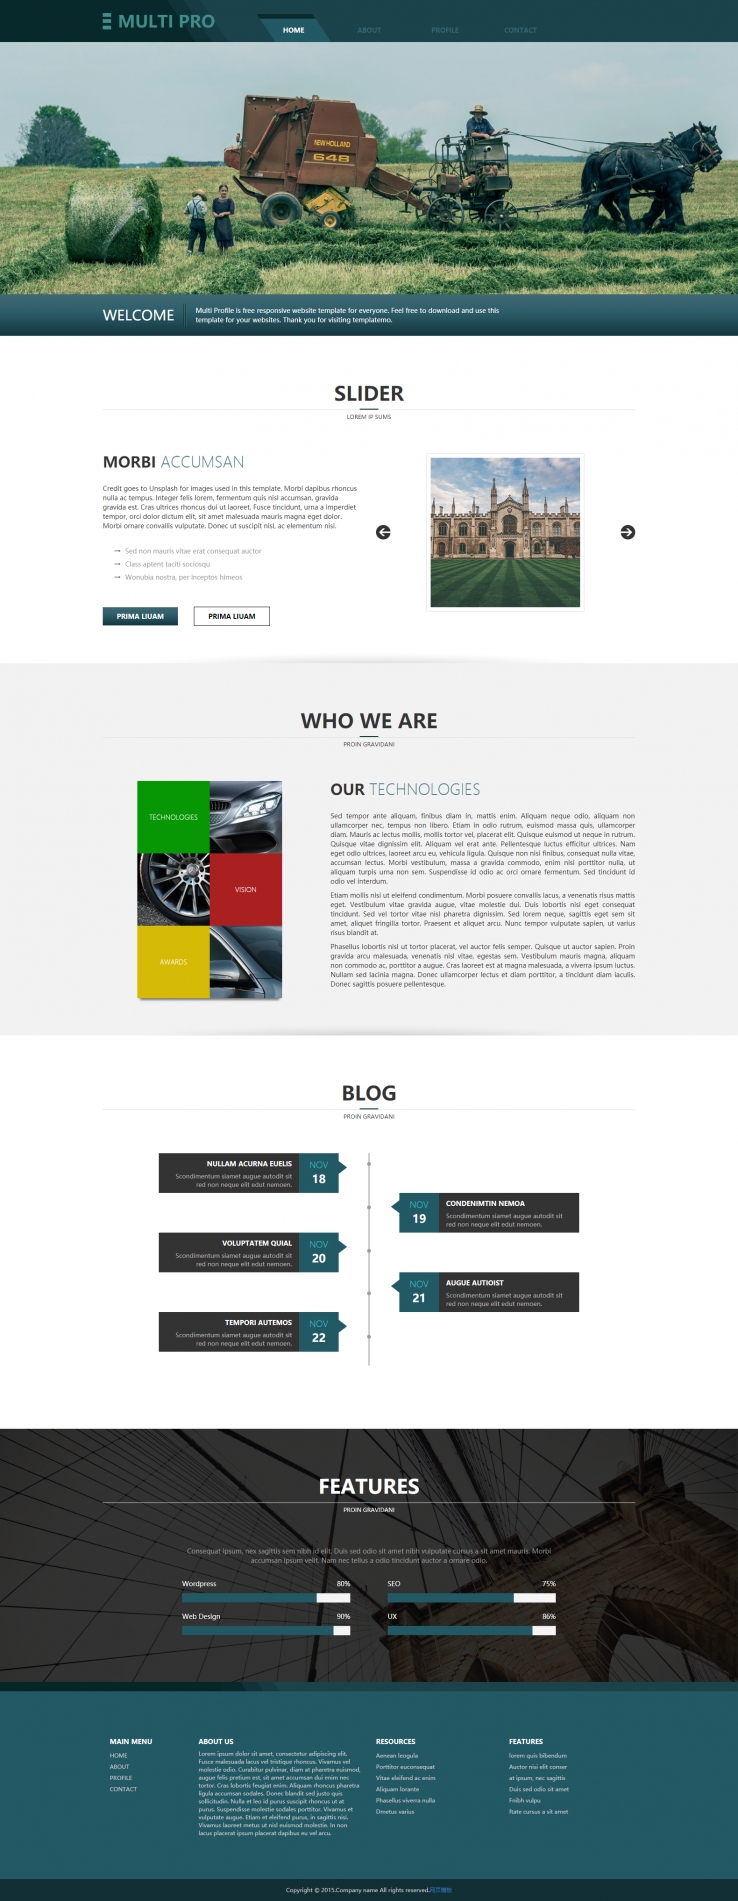 墨绿色简洁风格的汽车企业网站模板